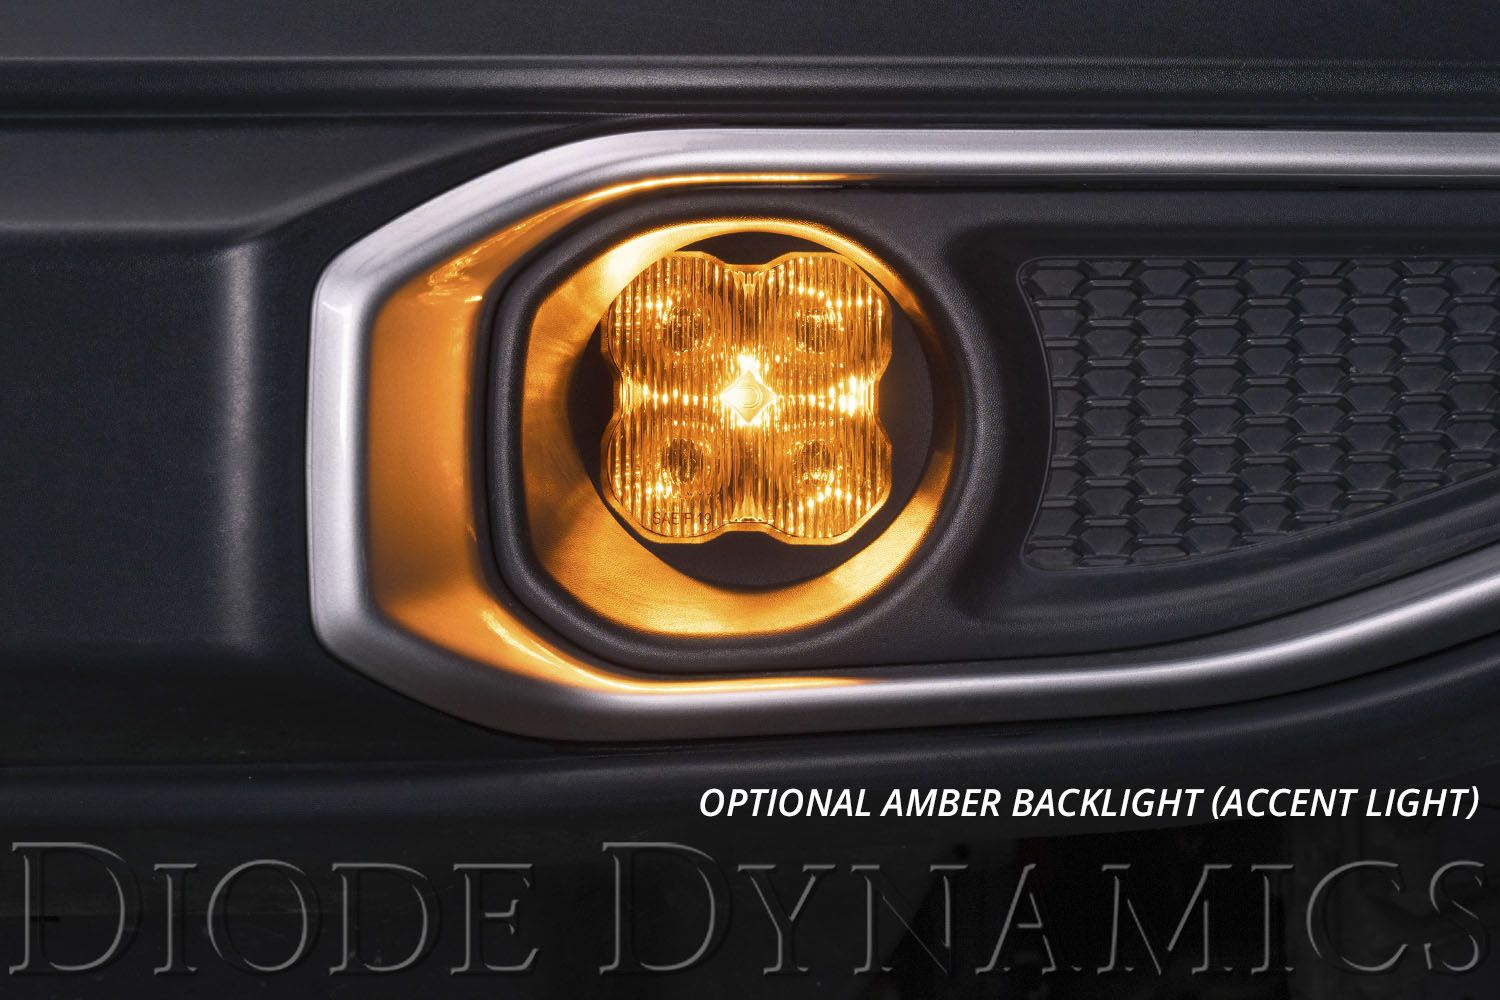 SS3 LED Fog Light Kit for 2007-2012 Toyota Avalon Diode Dynamics-